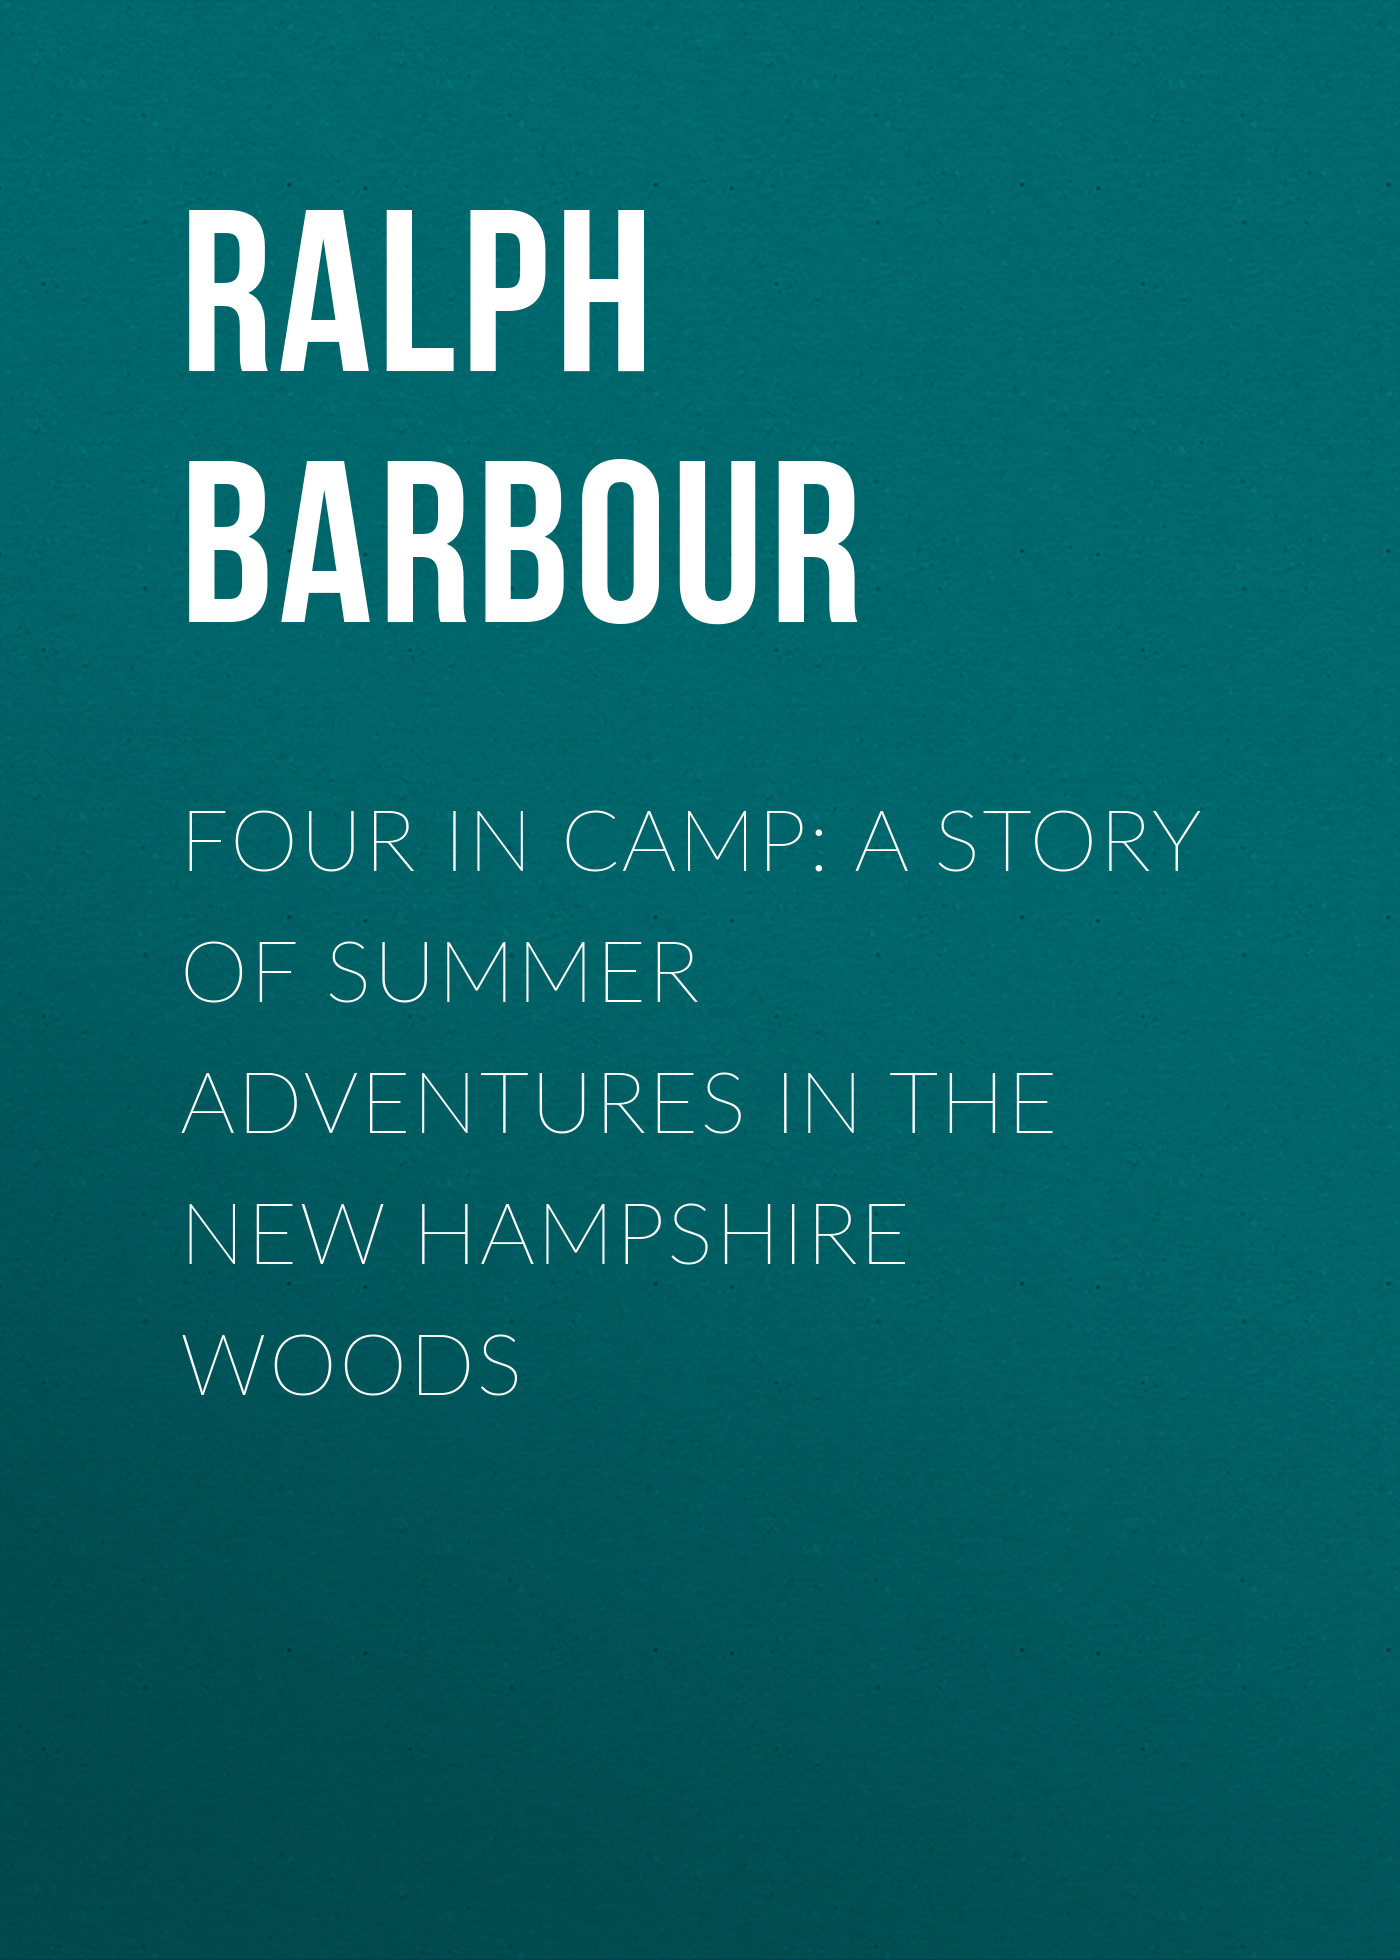 Книга Four in Camp: A Story of Summer Adventures in the New Hampshire Woods из серии , созданная Ralph Barbour, может относится к жанру Зарубежная классика, Зарубежные детские книги. Стоимость электронной книги Four in Camp: A Story of Summer Adventures in the New Hampshire Woods с идентификатором 23148787 составляет 5.99 руб.